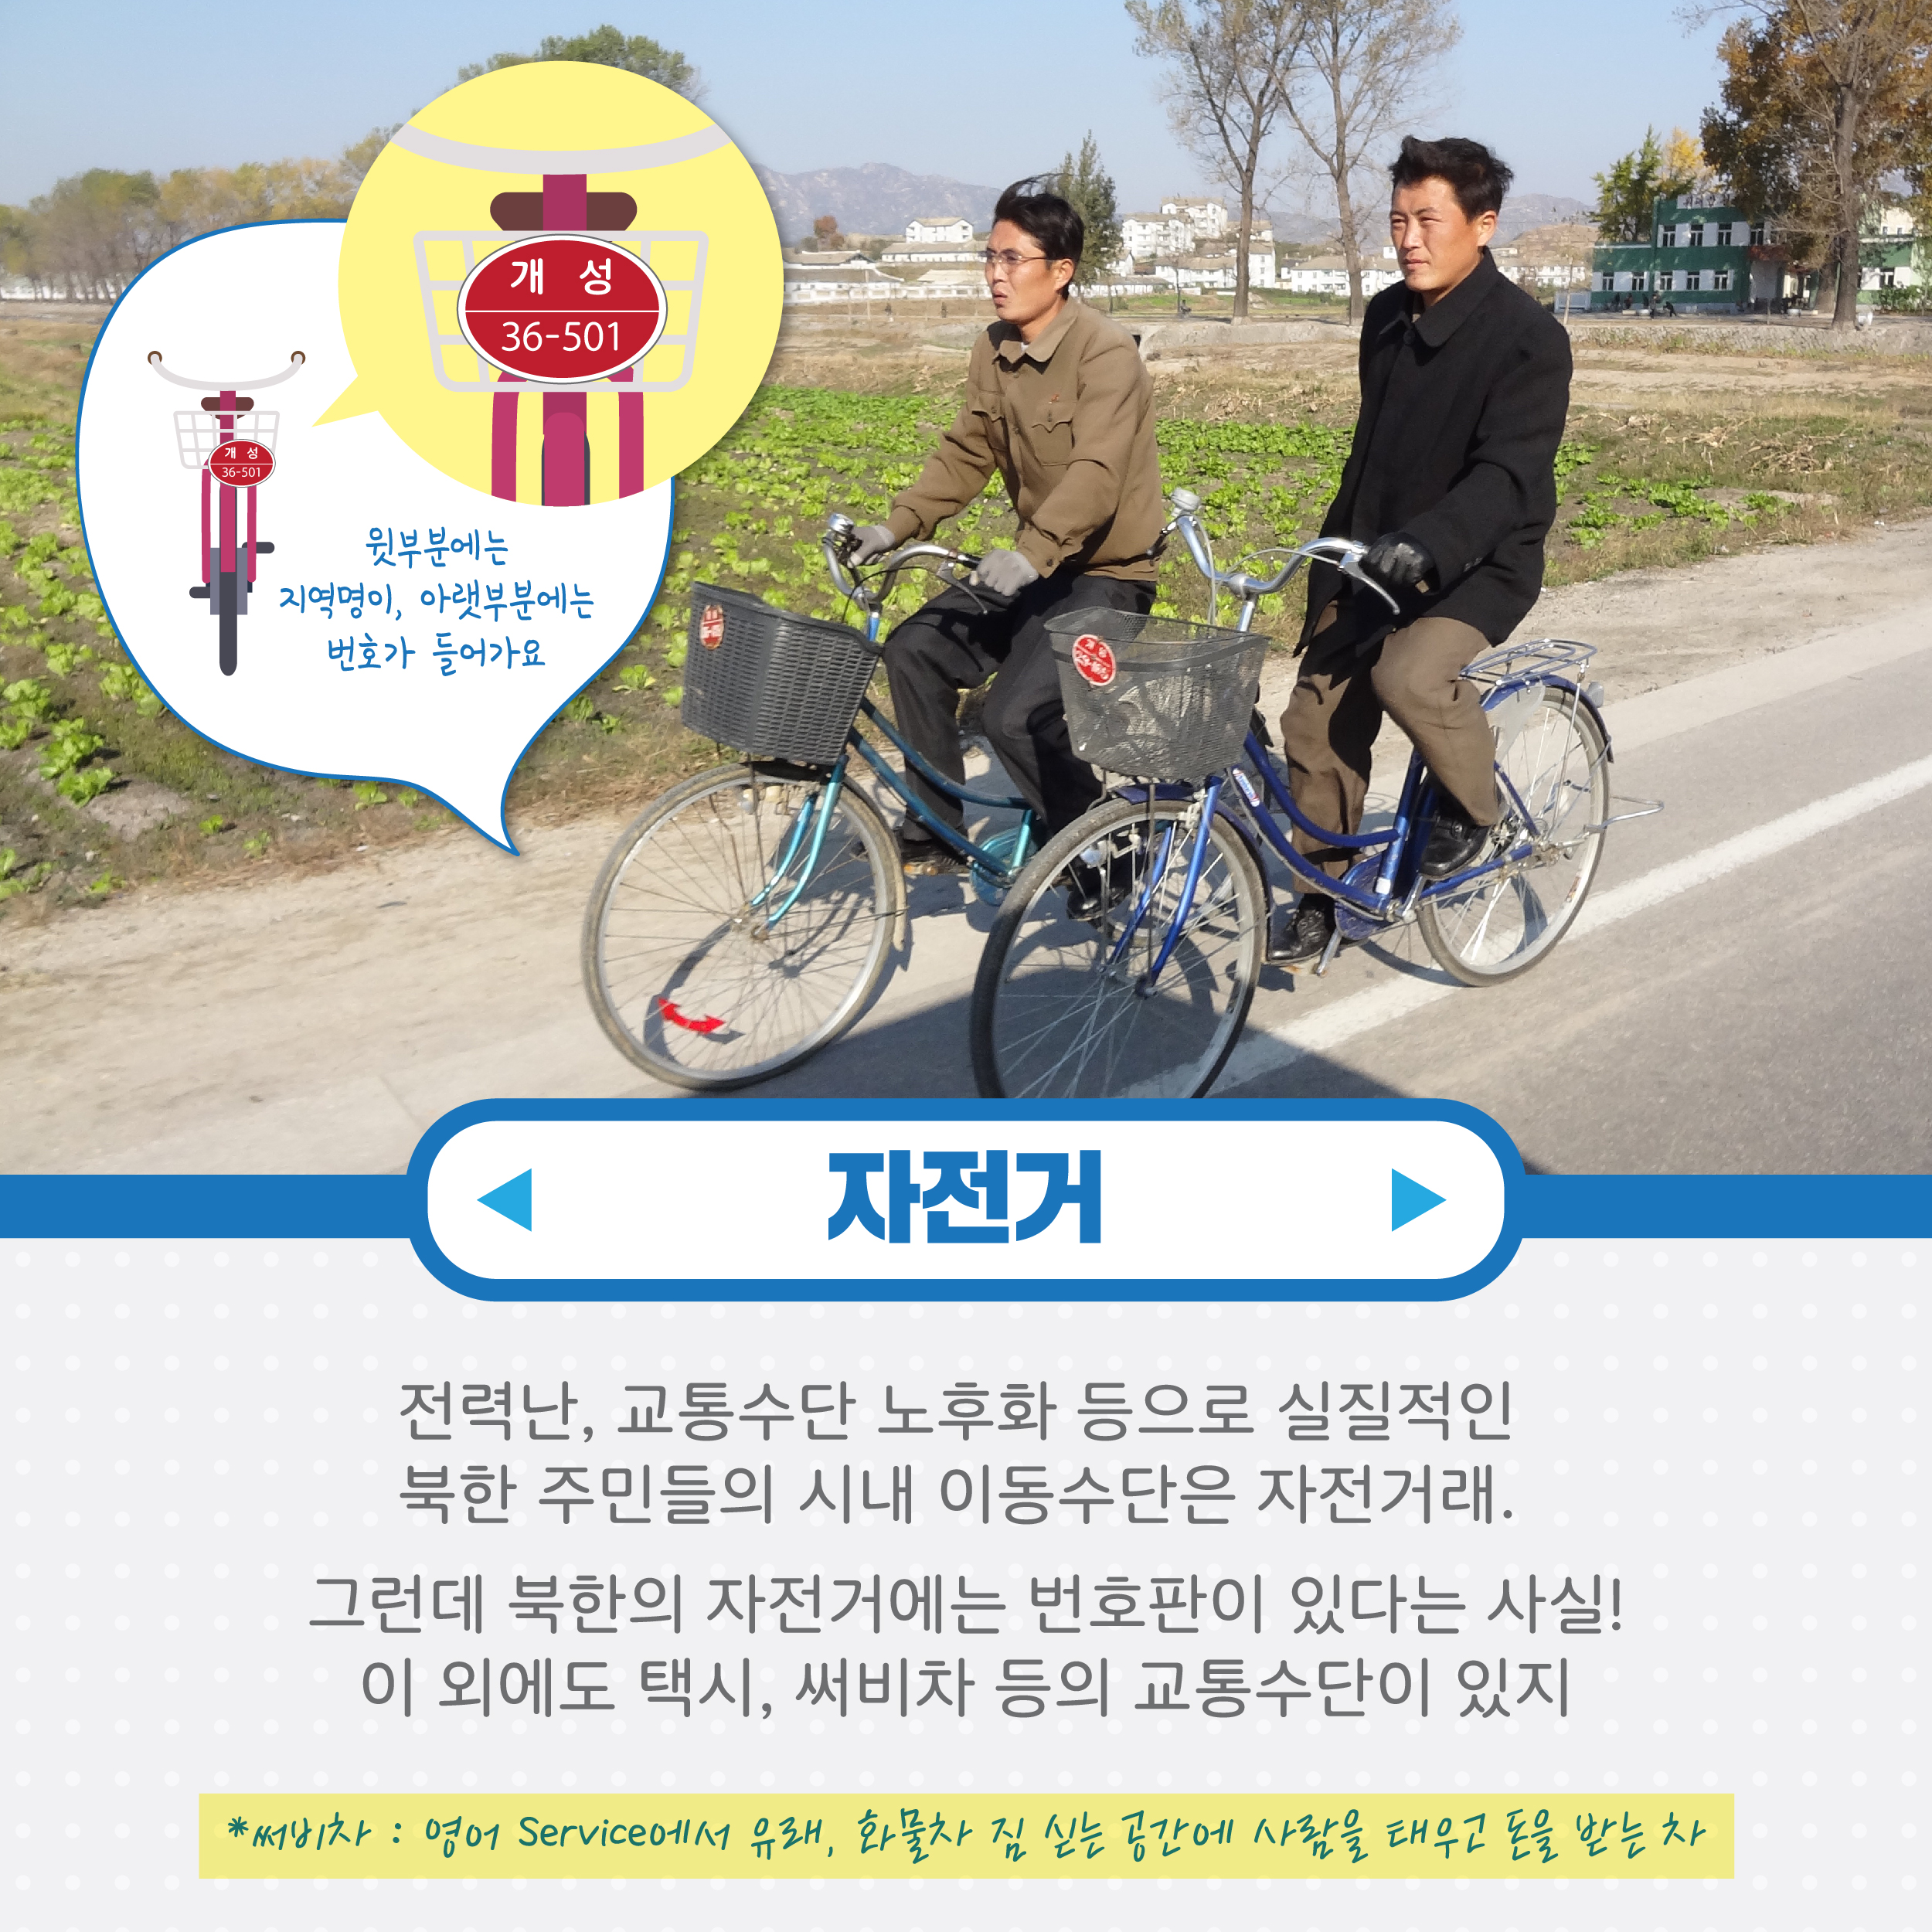 자전거  전력란, 교통수단 노후화 등으로 실질적인 북한 주민들이 시내 이동수단은 자전거래, 그런데 북한의 자전거에도 번호판이 있단느 사실 이외에도 택시, 써비차 등의 교통수단이 있지